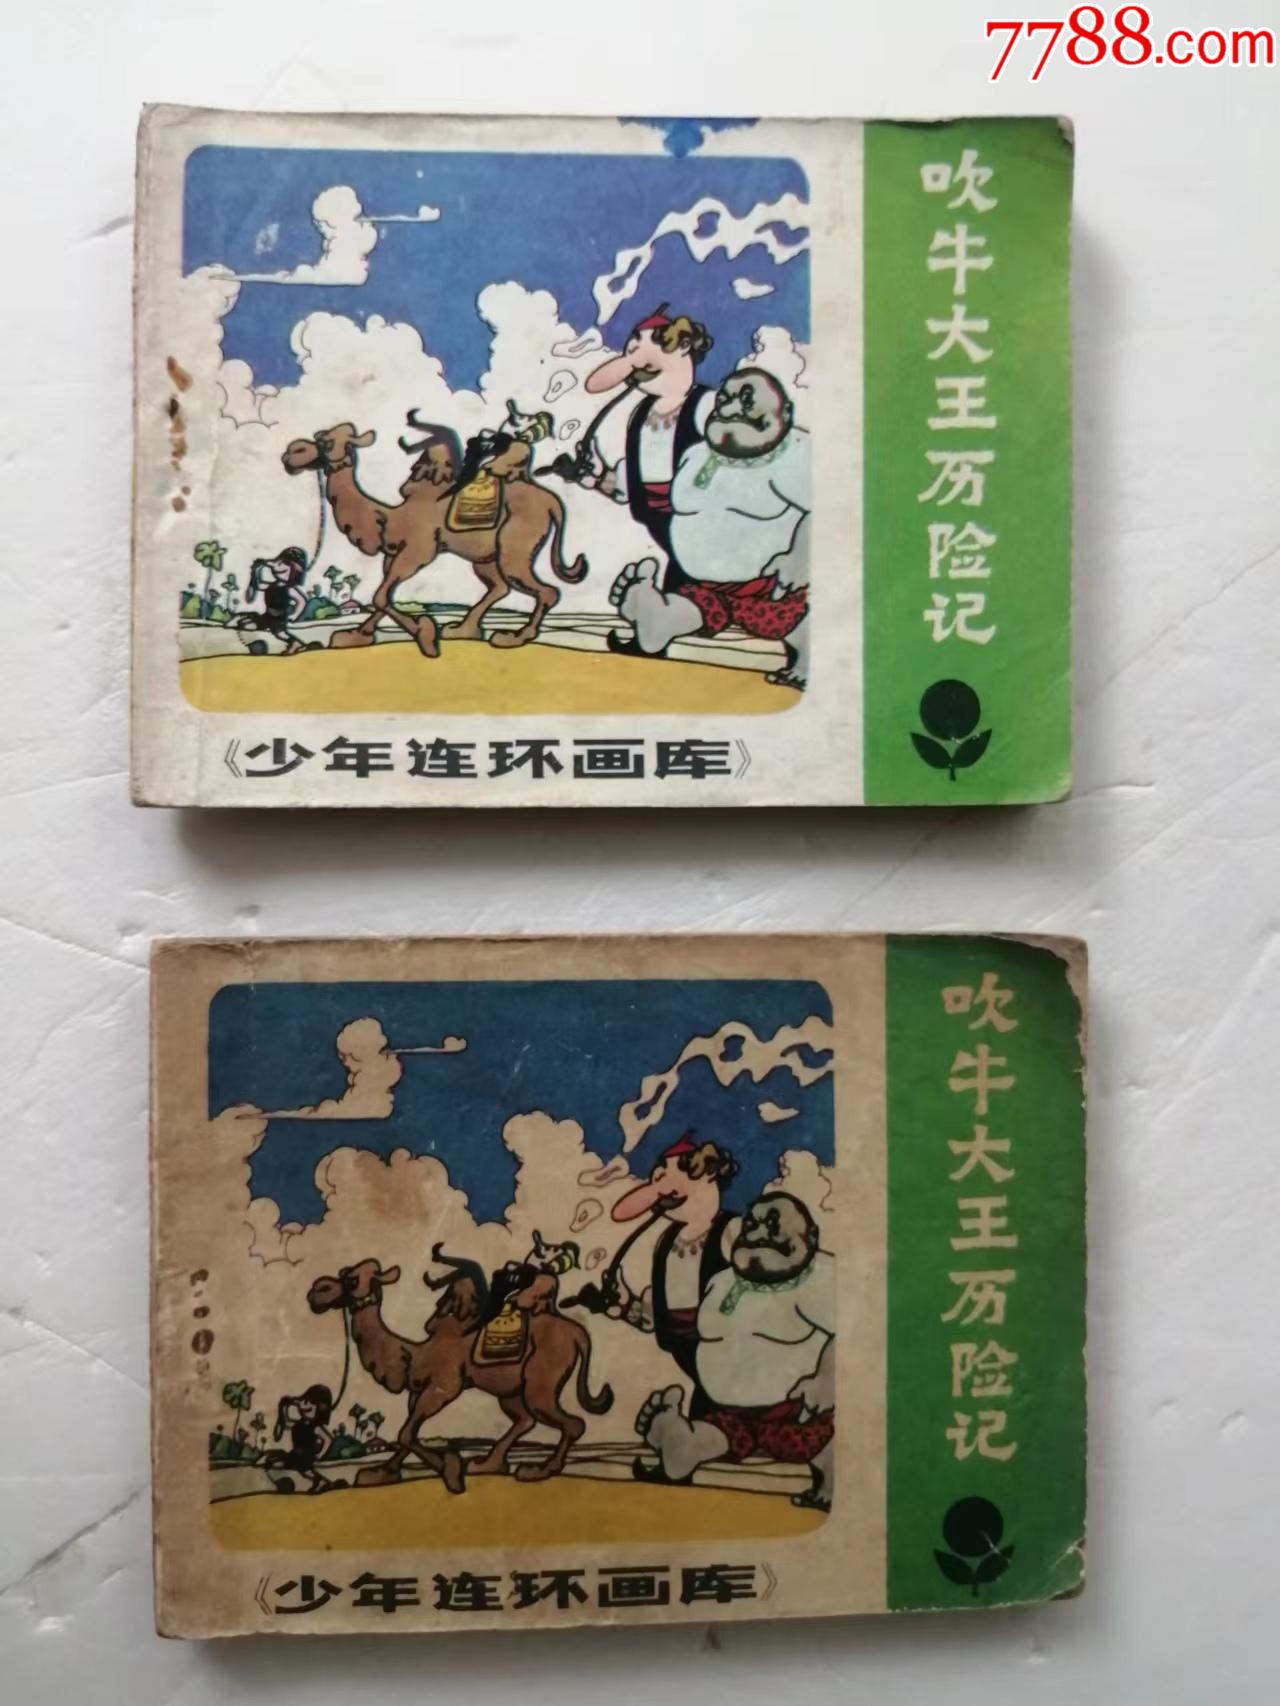 吹牛大王历险记 (夏洛书屋：经典版) (Chinese Edition) by 戈·奥·毕尔格 (G. A. Bürger) | Goodreads